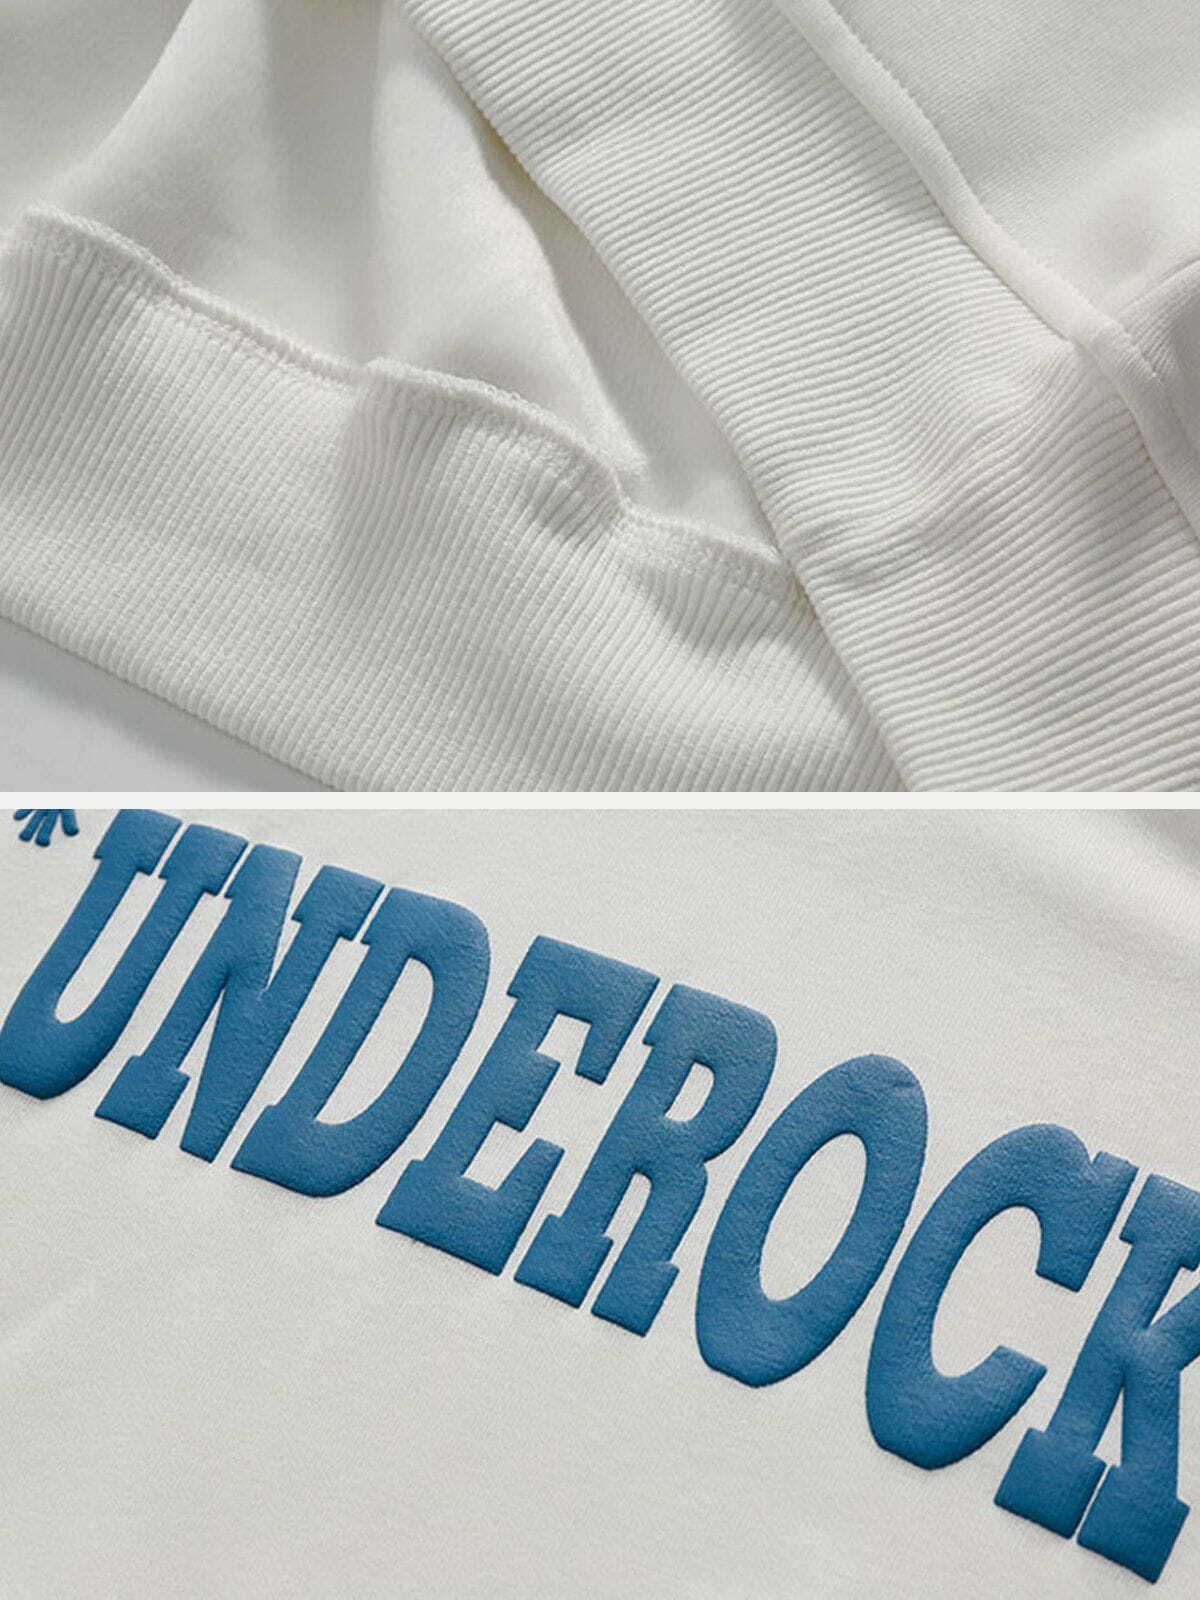 unique 'underock' hoodie edgy streetwear essential 8985